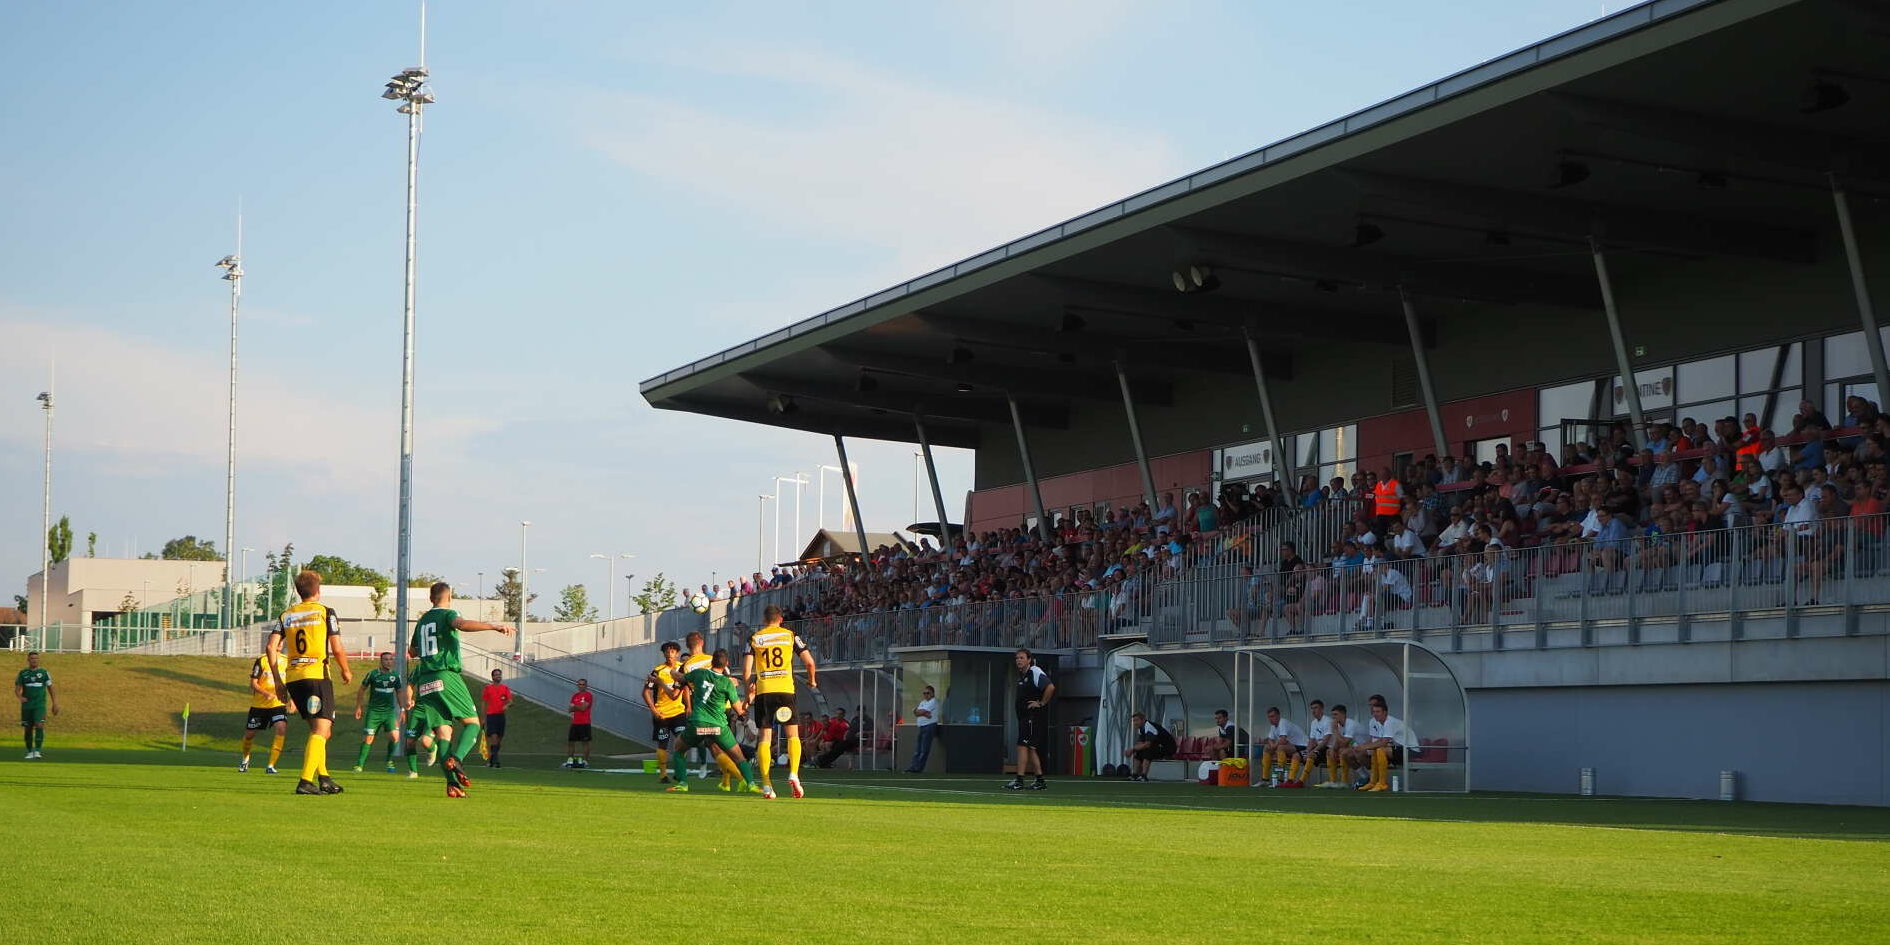 Falls WSC Hertha in die 2. Fußball-Bundesliga aufsteigt, darf der Klub die Huber-Arena des FC Wels nutzen — darüber wurde nun eine Einigung erzielt.